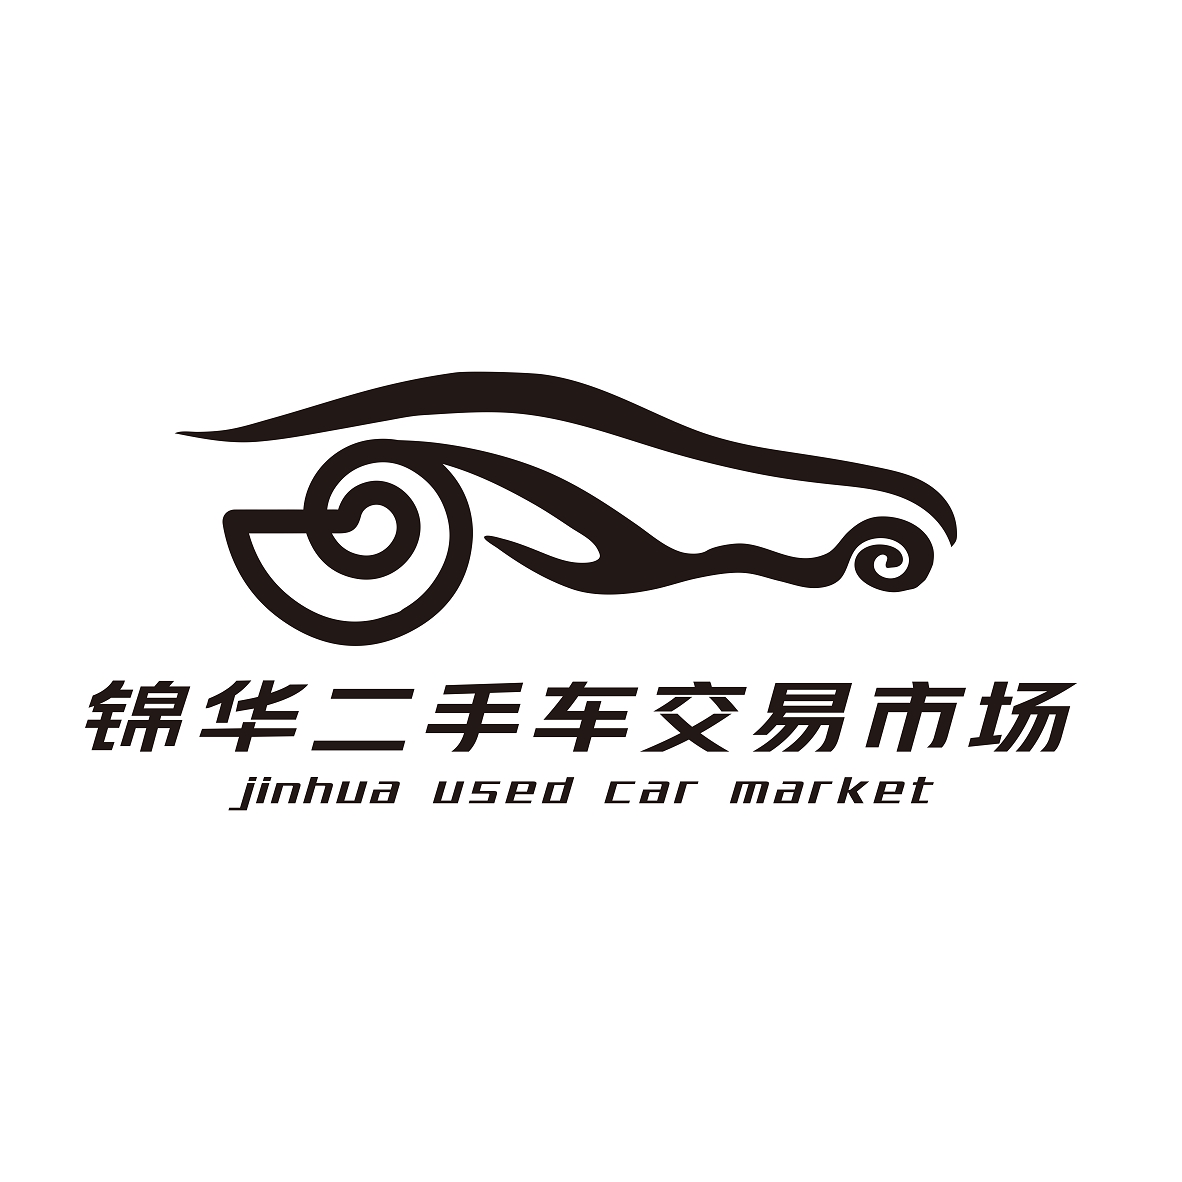 深圳市锦华二手车市场交易管理有限公司